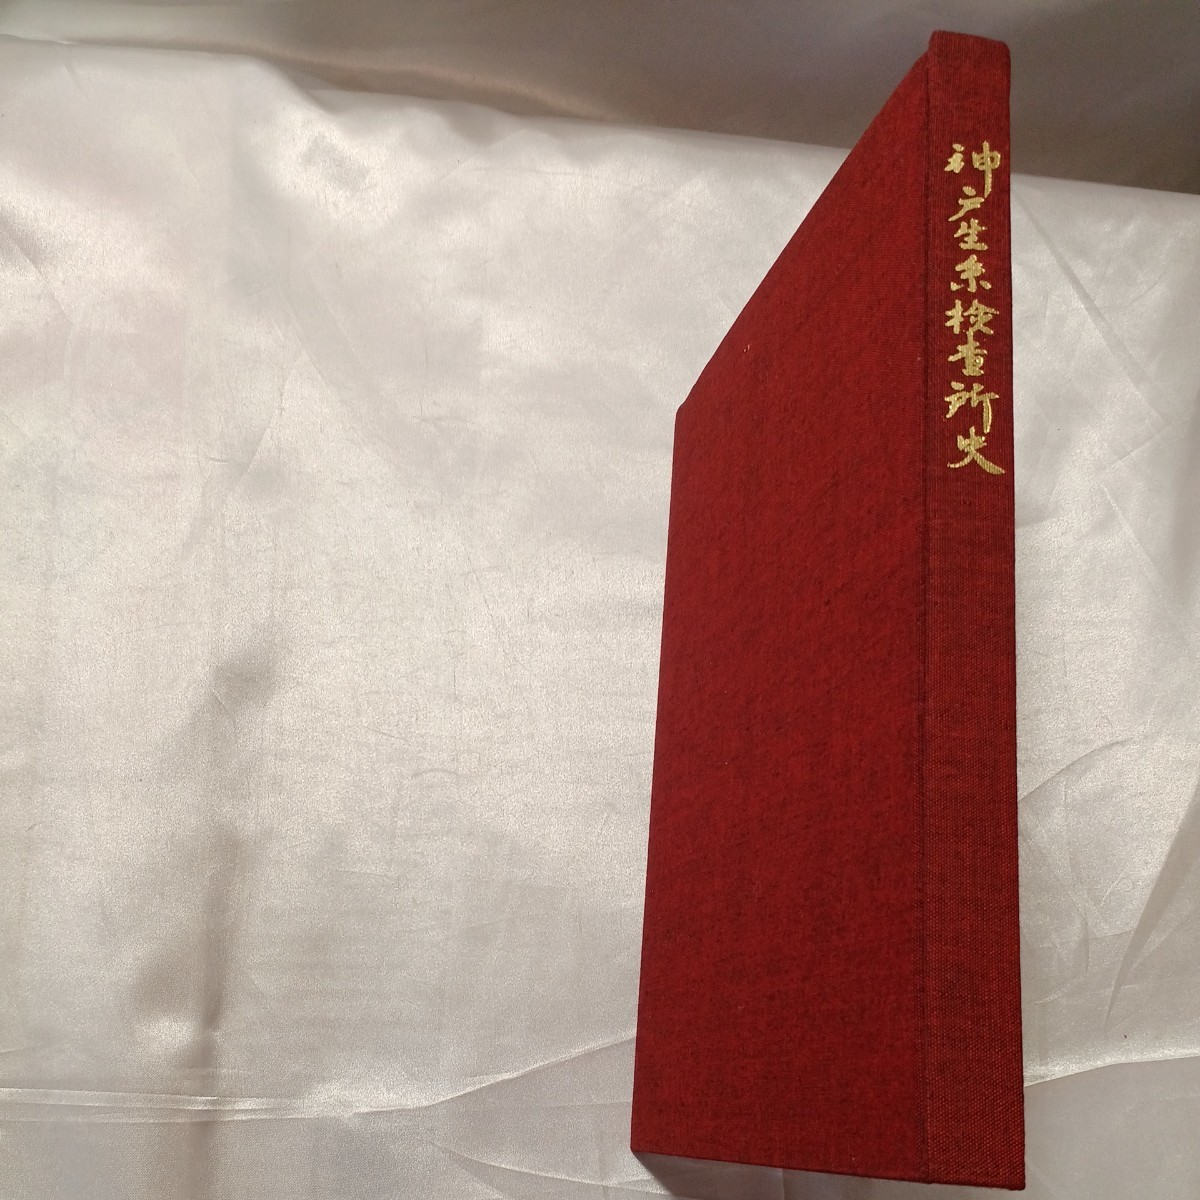 zaa-466♪『神戸生糸検査所史』神戸農林規格検査所(編)　1982年3月　かつて日本の文化や産業を発信する拠点だった旧神戸生糸検査所史